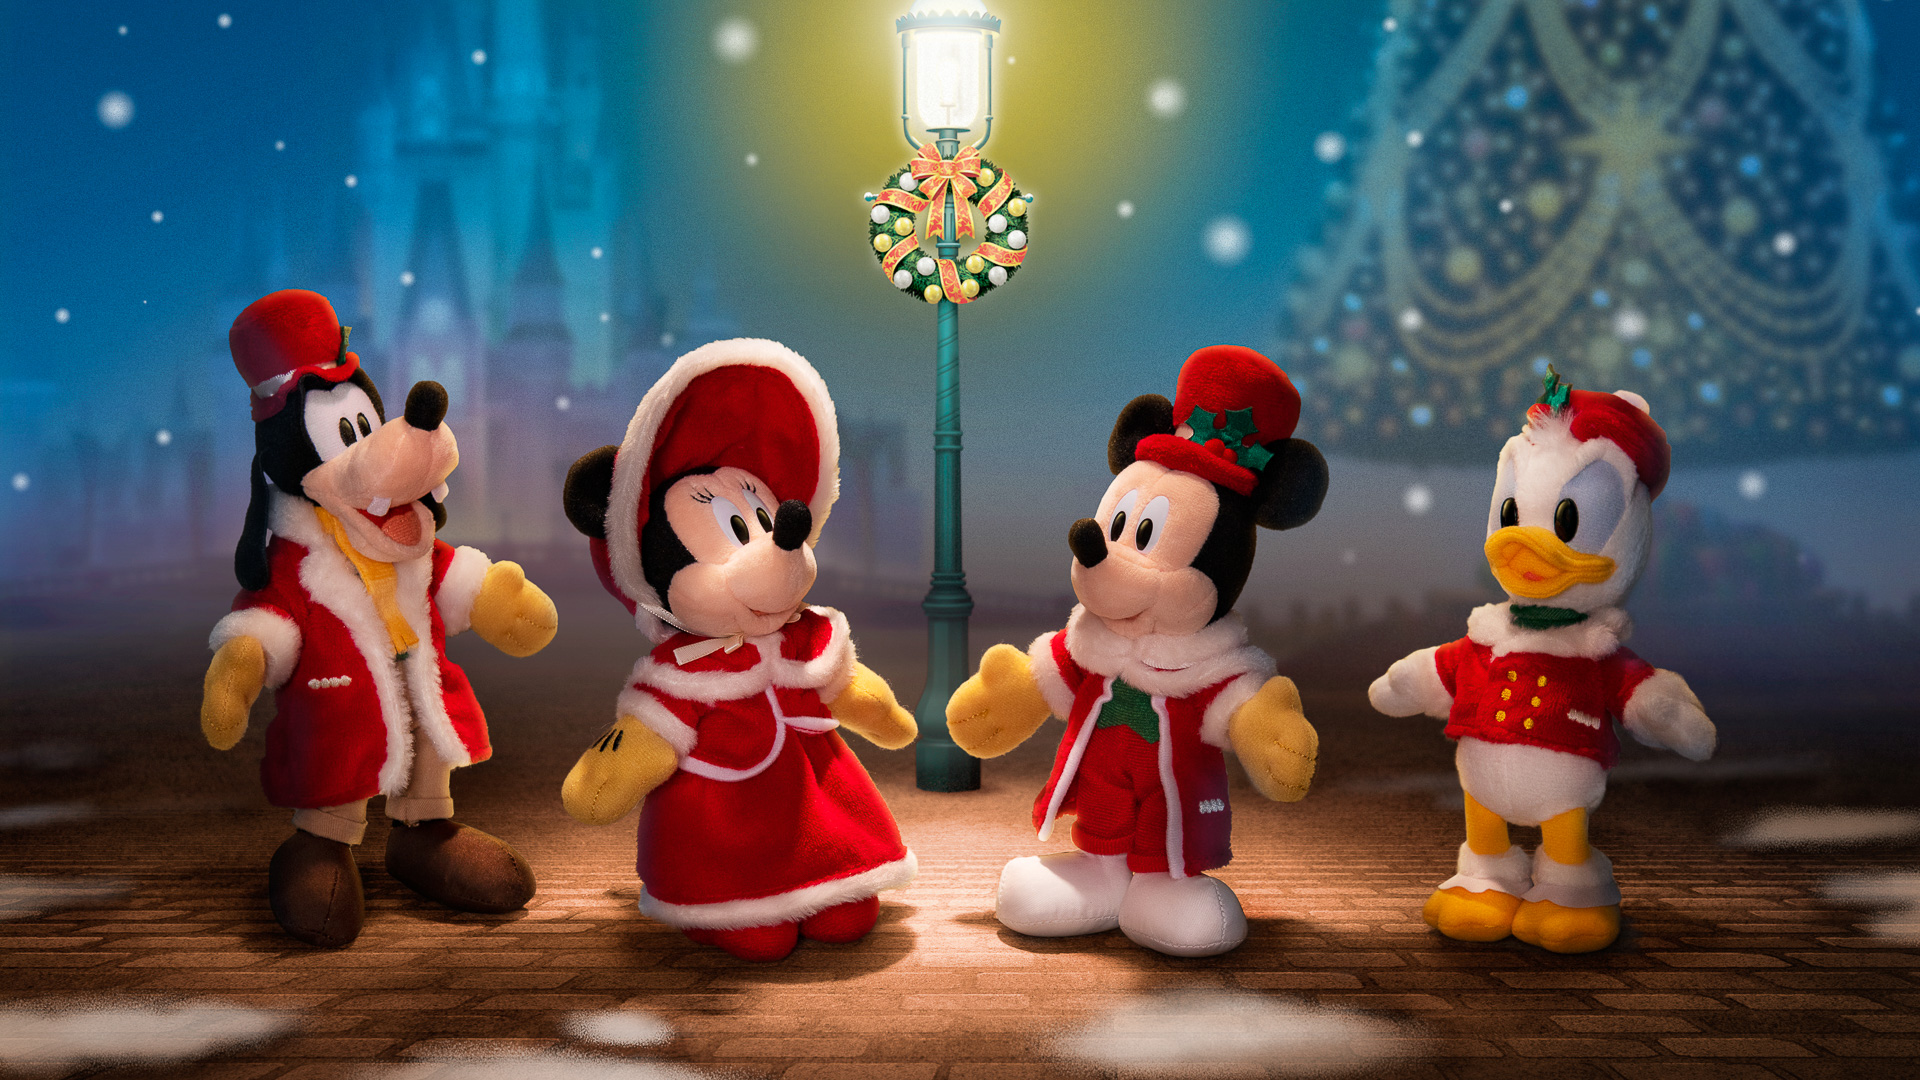 ディズニー・クリスマスのぬいバは、音楽を奏でるミッキーマウスたちが